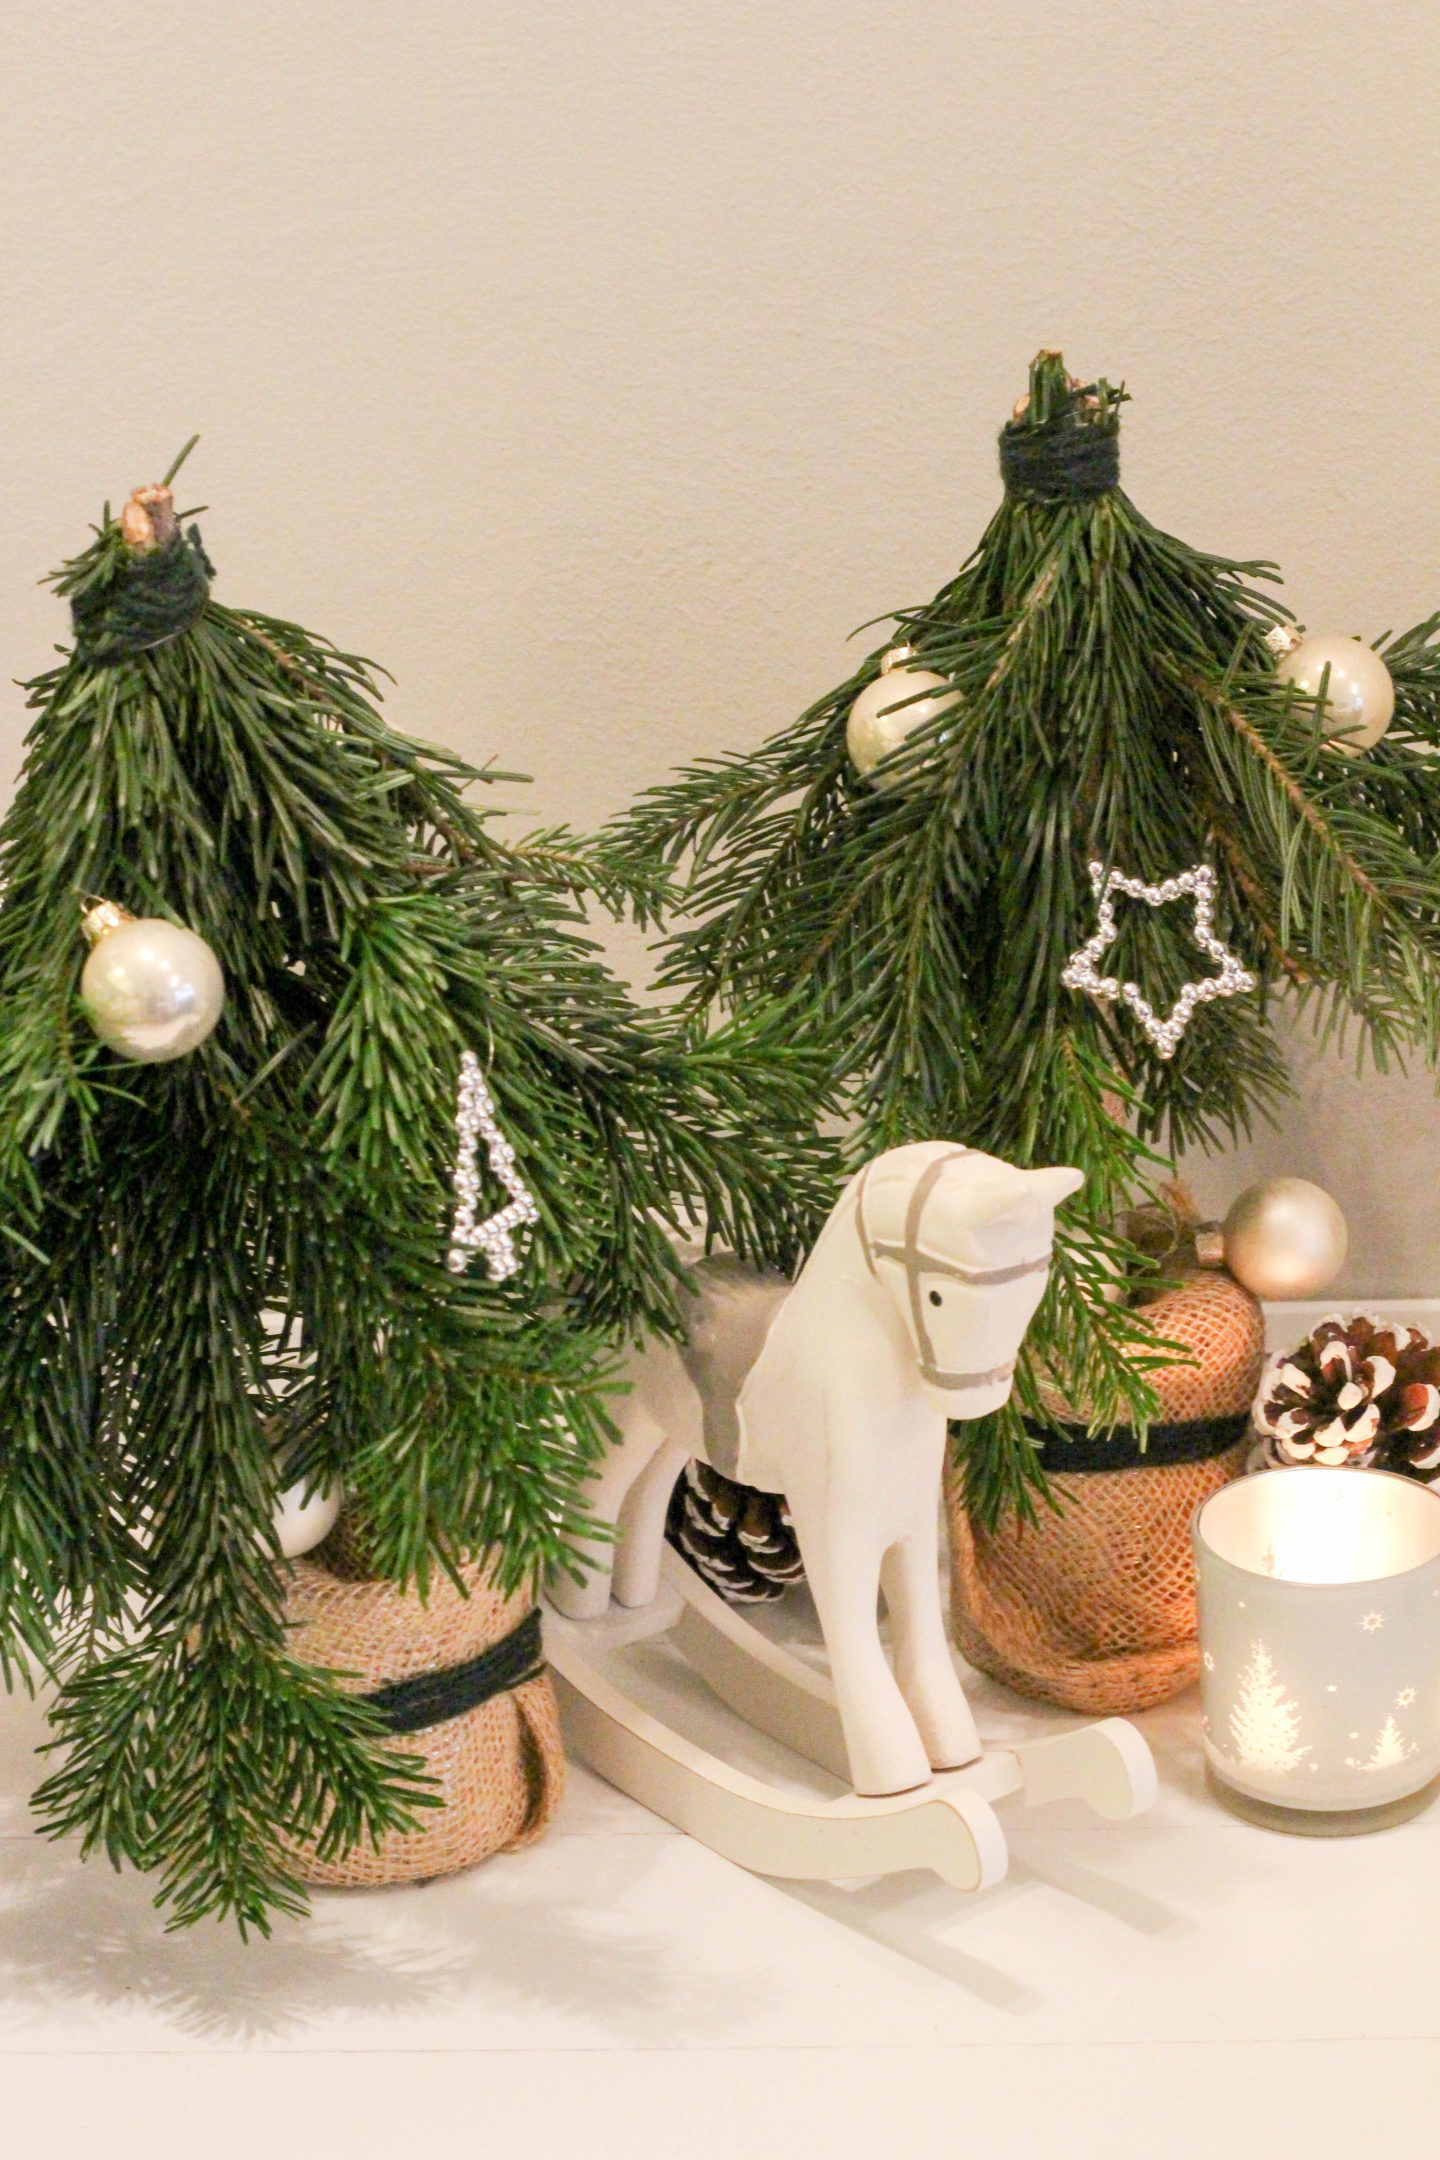 vegane-nussknoepfe-diy-weihnachtsbaum-selbstgemacht-christmas-homespa-plantbased-1-von-1-16